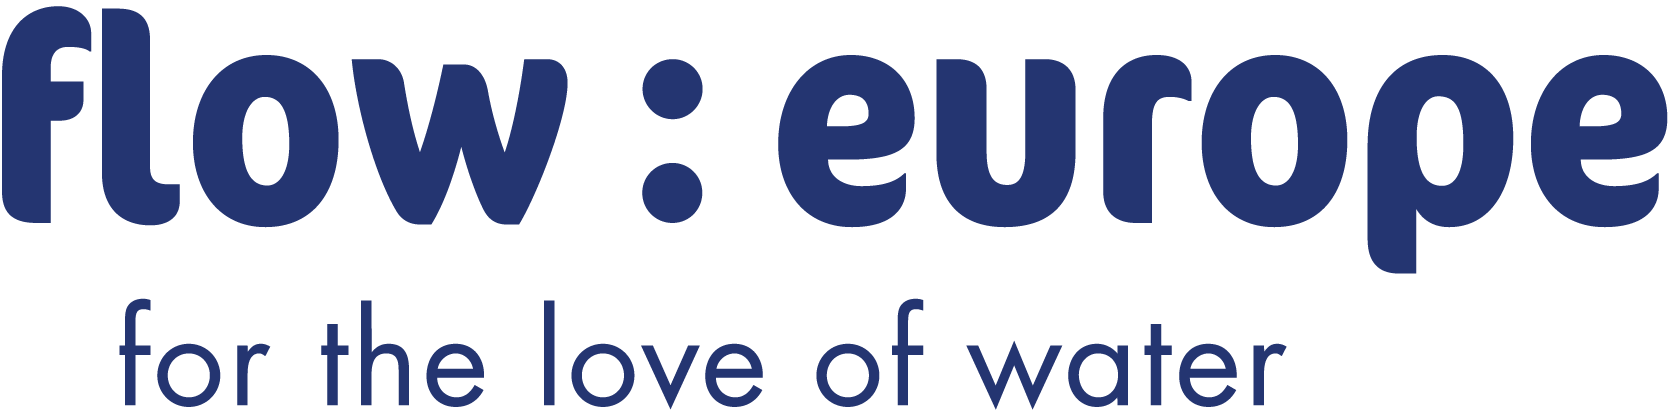 flow_europe_logo.png